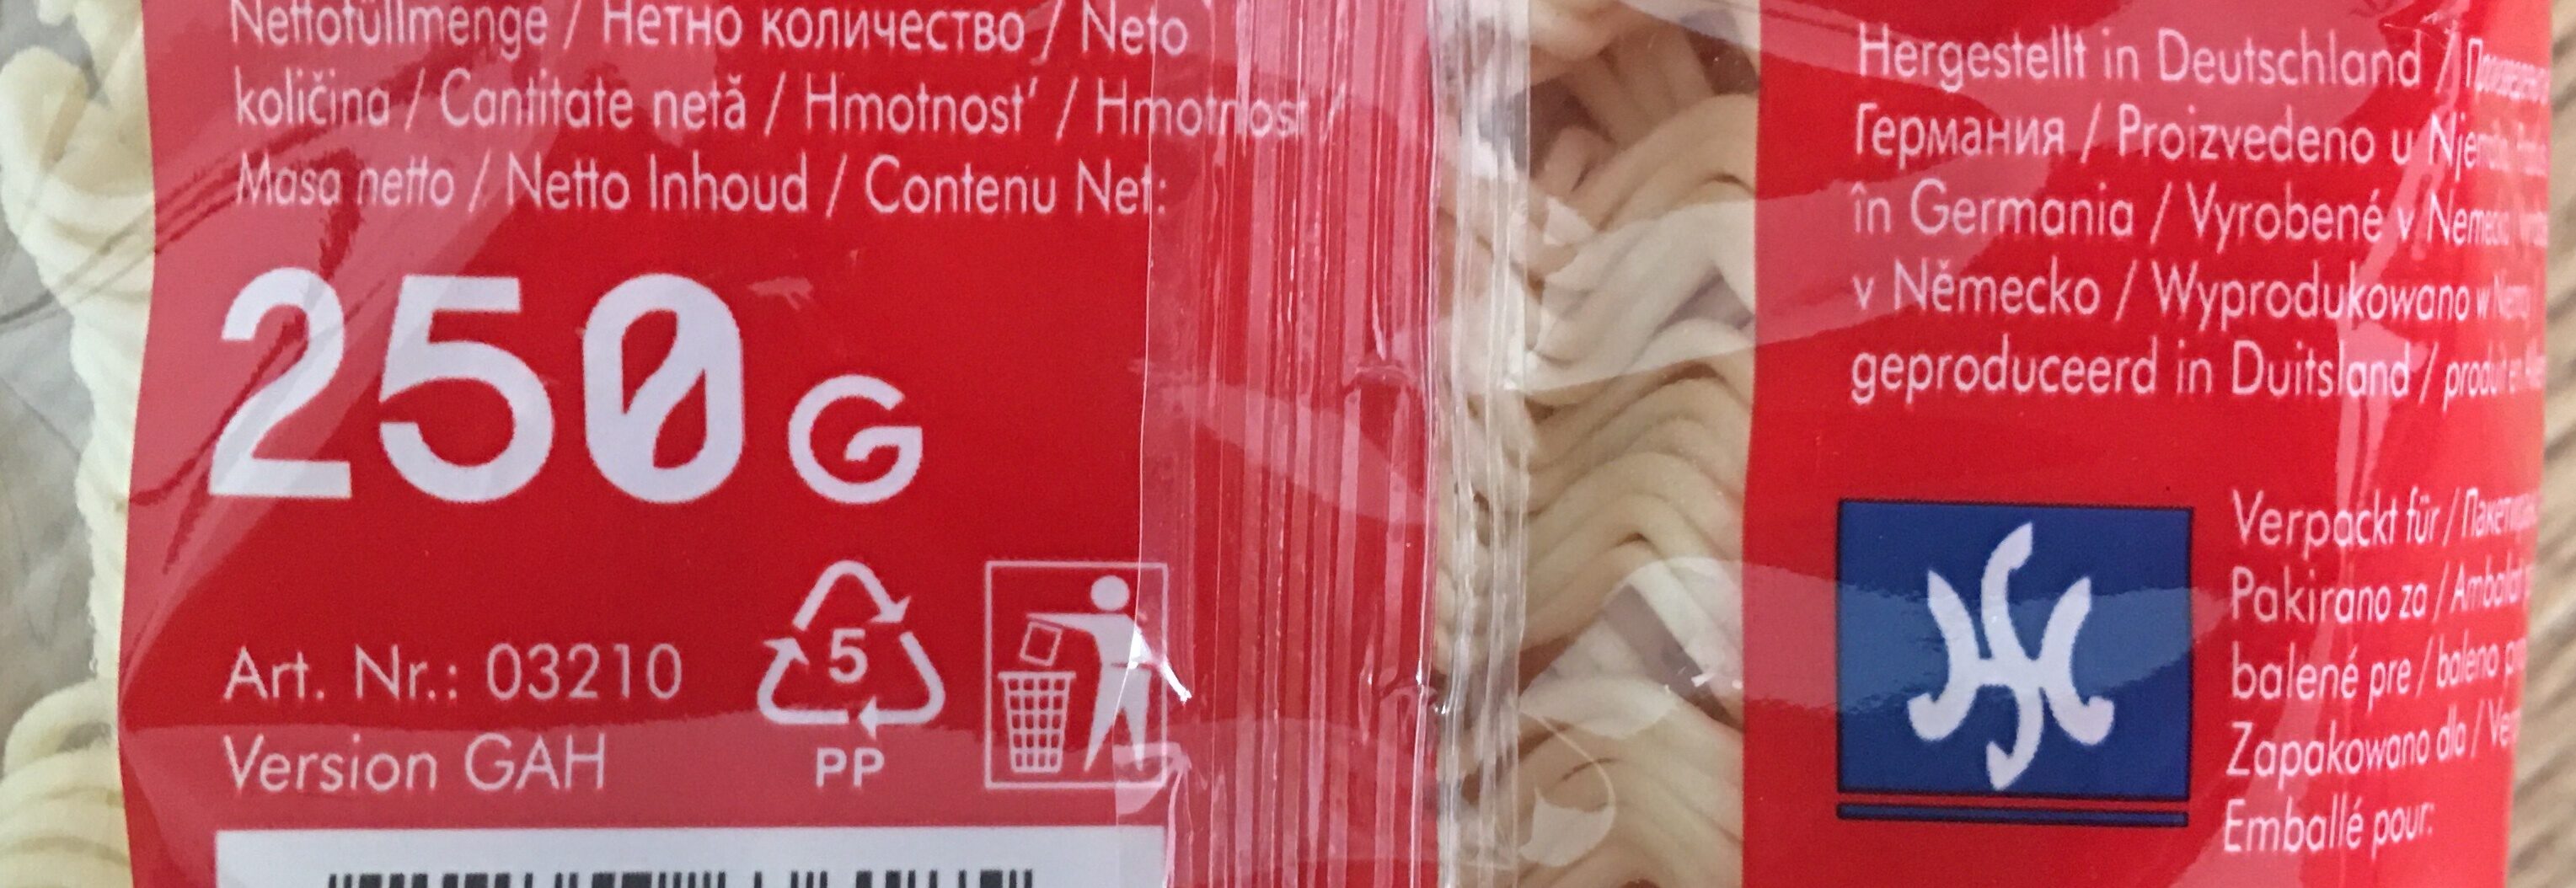 Mie noodles - Instrukcje dotyczące recyklingu i / lub informacje na temat opakowania